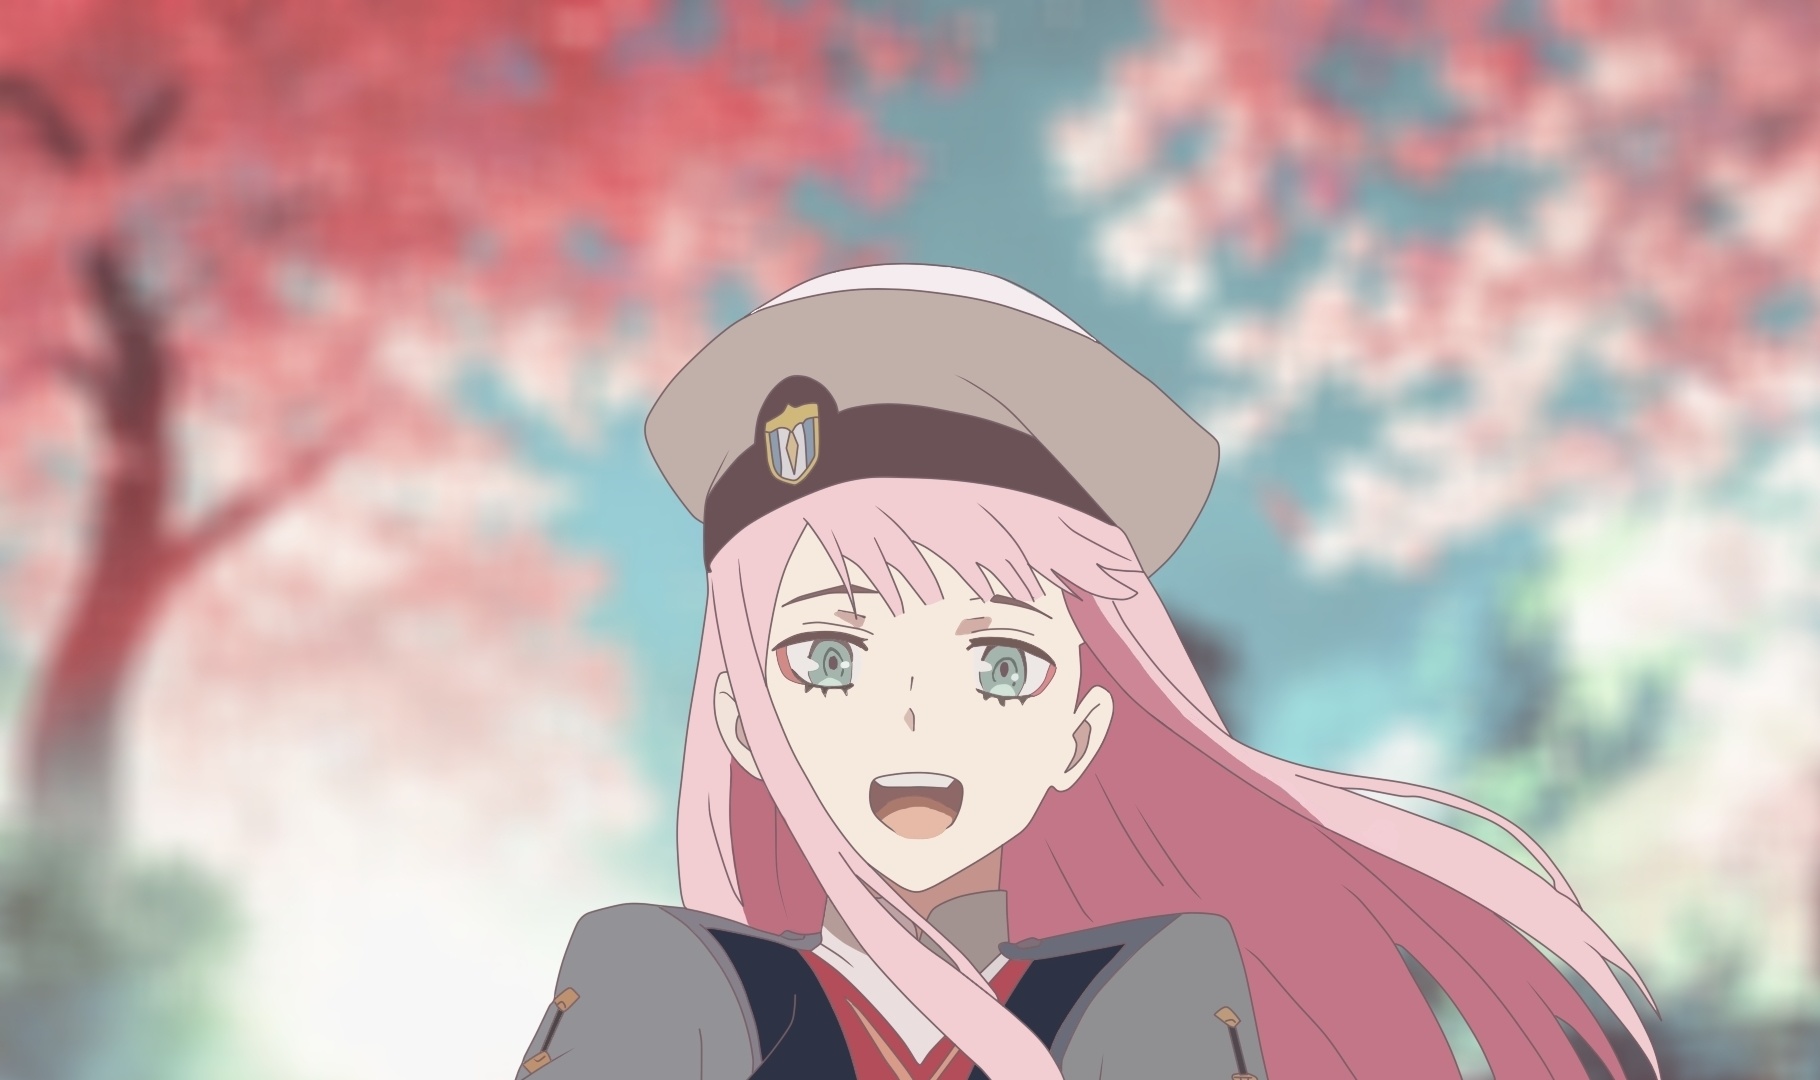 Download zero two uniform cute ana beautiful anime girl 1820x1080 hd 